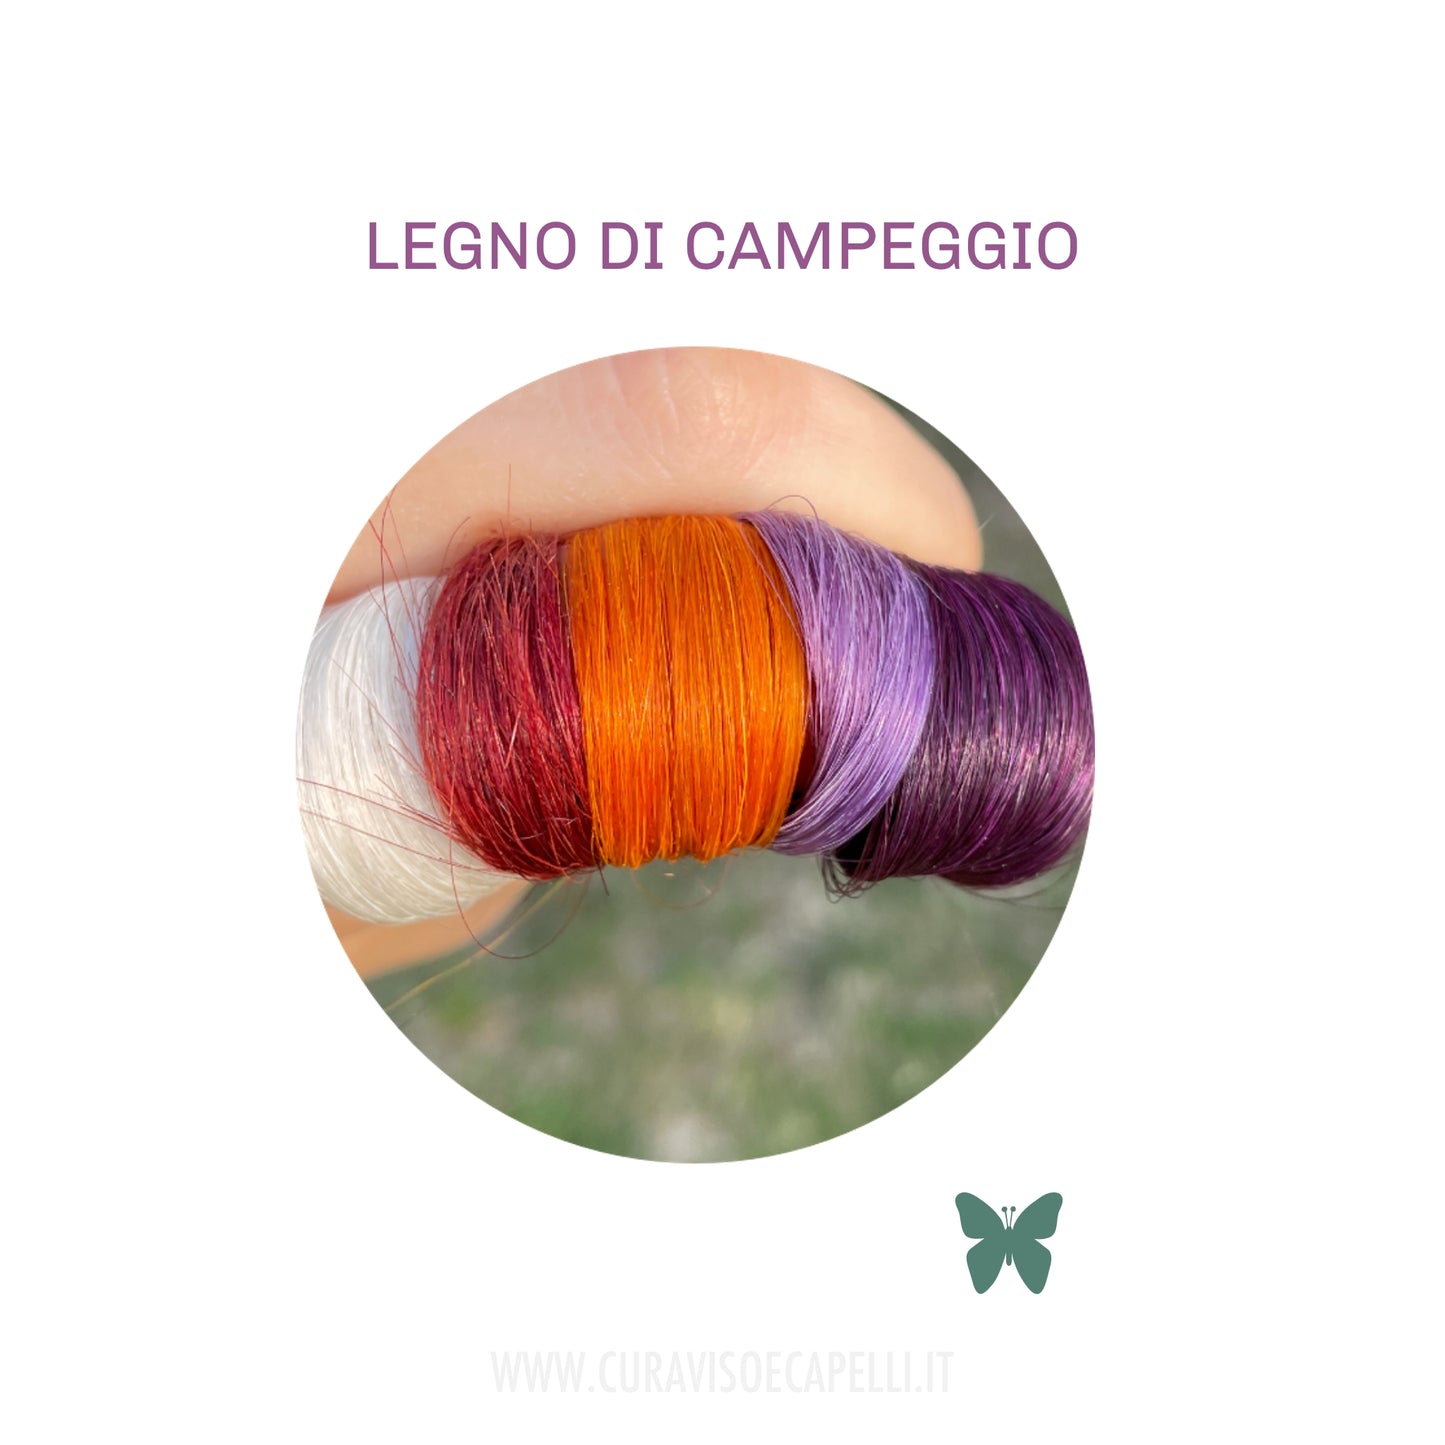 Legno di Campeggio - Riflessante Naturale Capelli Violaceo o Ambrato